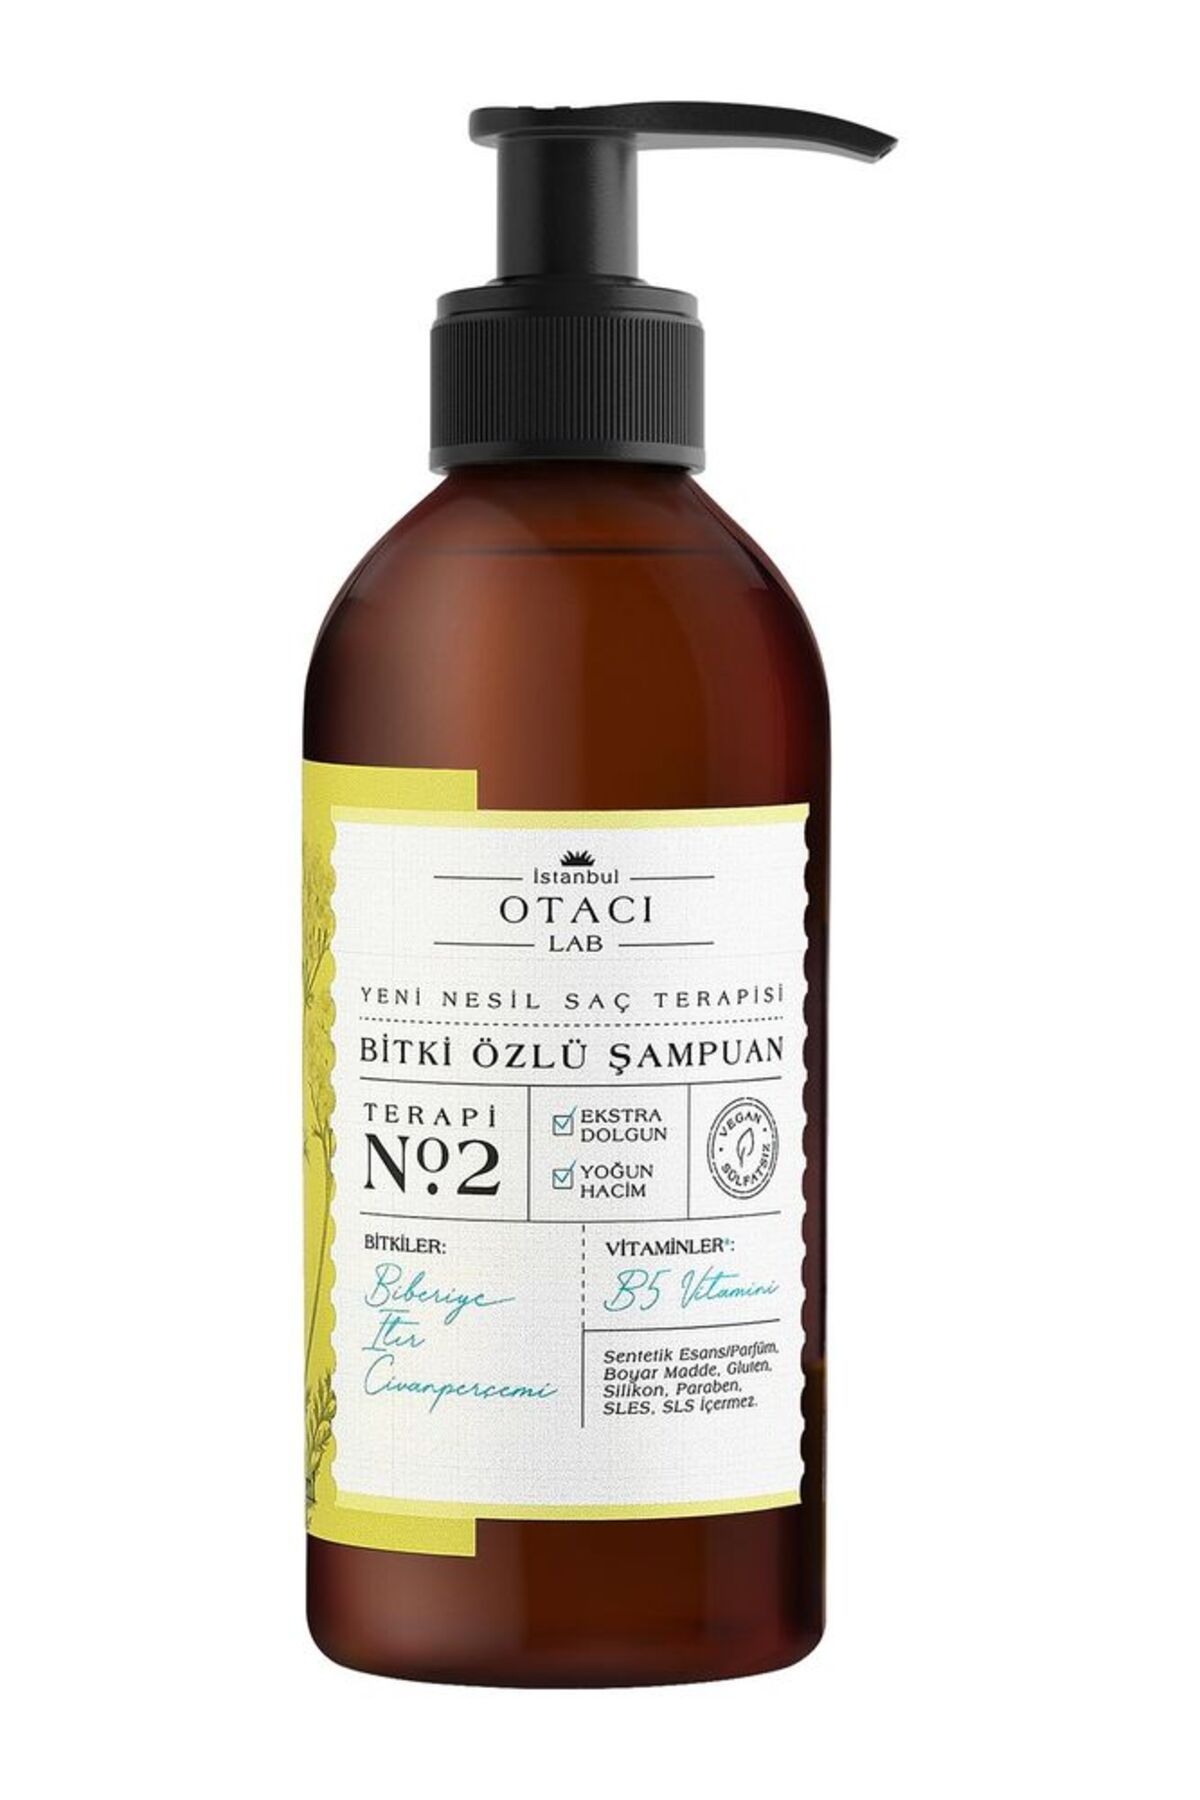 Otacı Lab Yeni Nesil Saç Terapisi Bitki Özlü Şampuan Terapi No:2